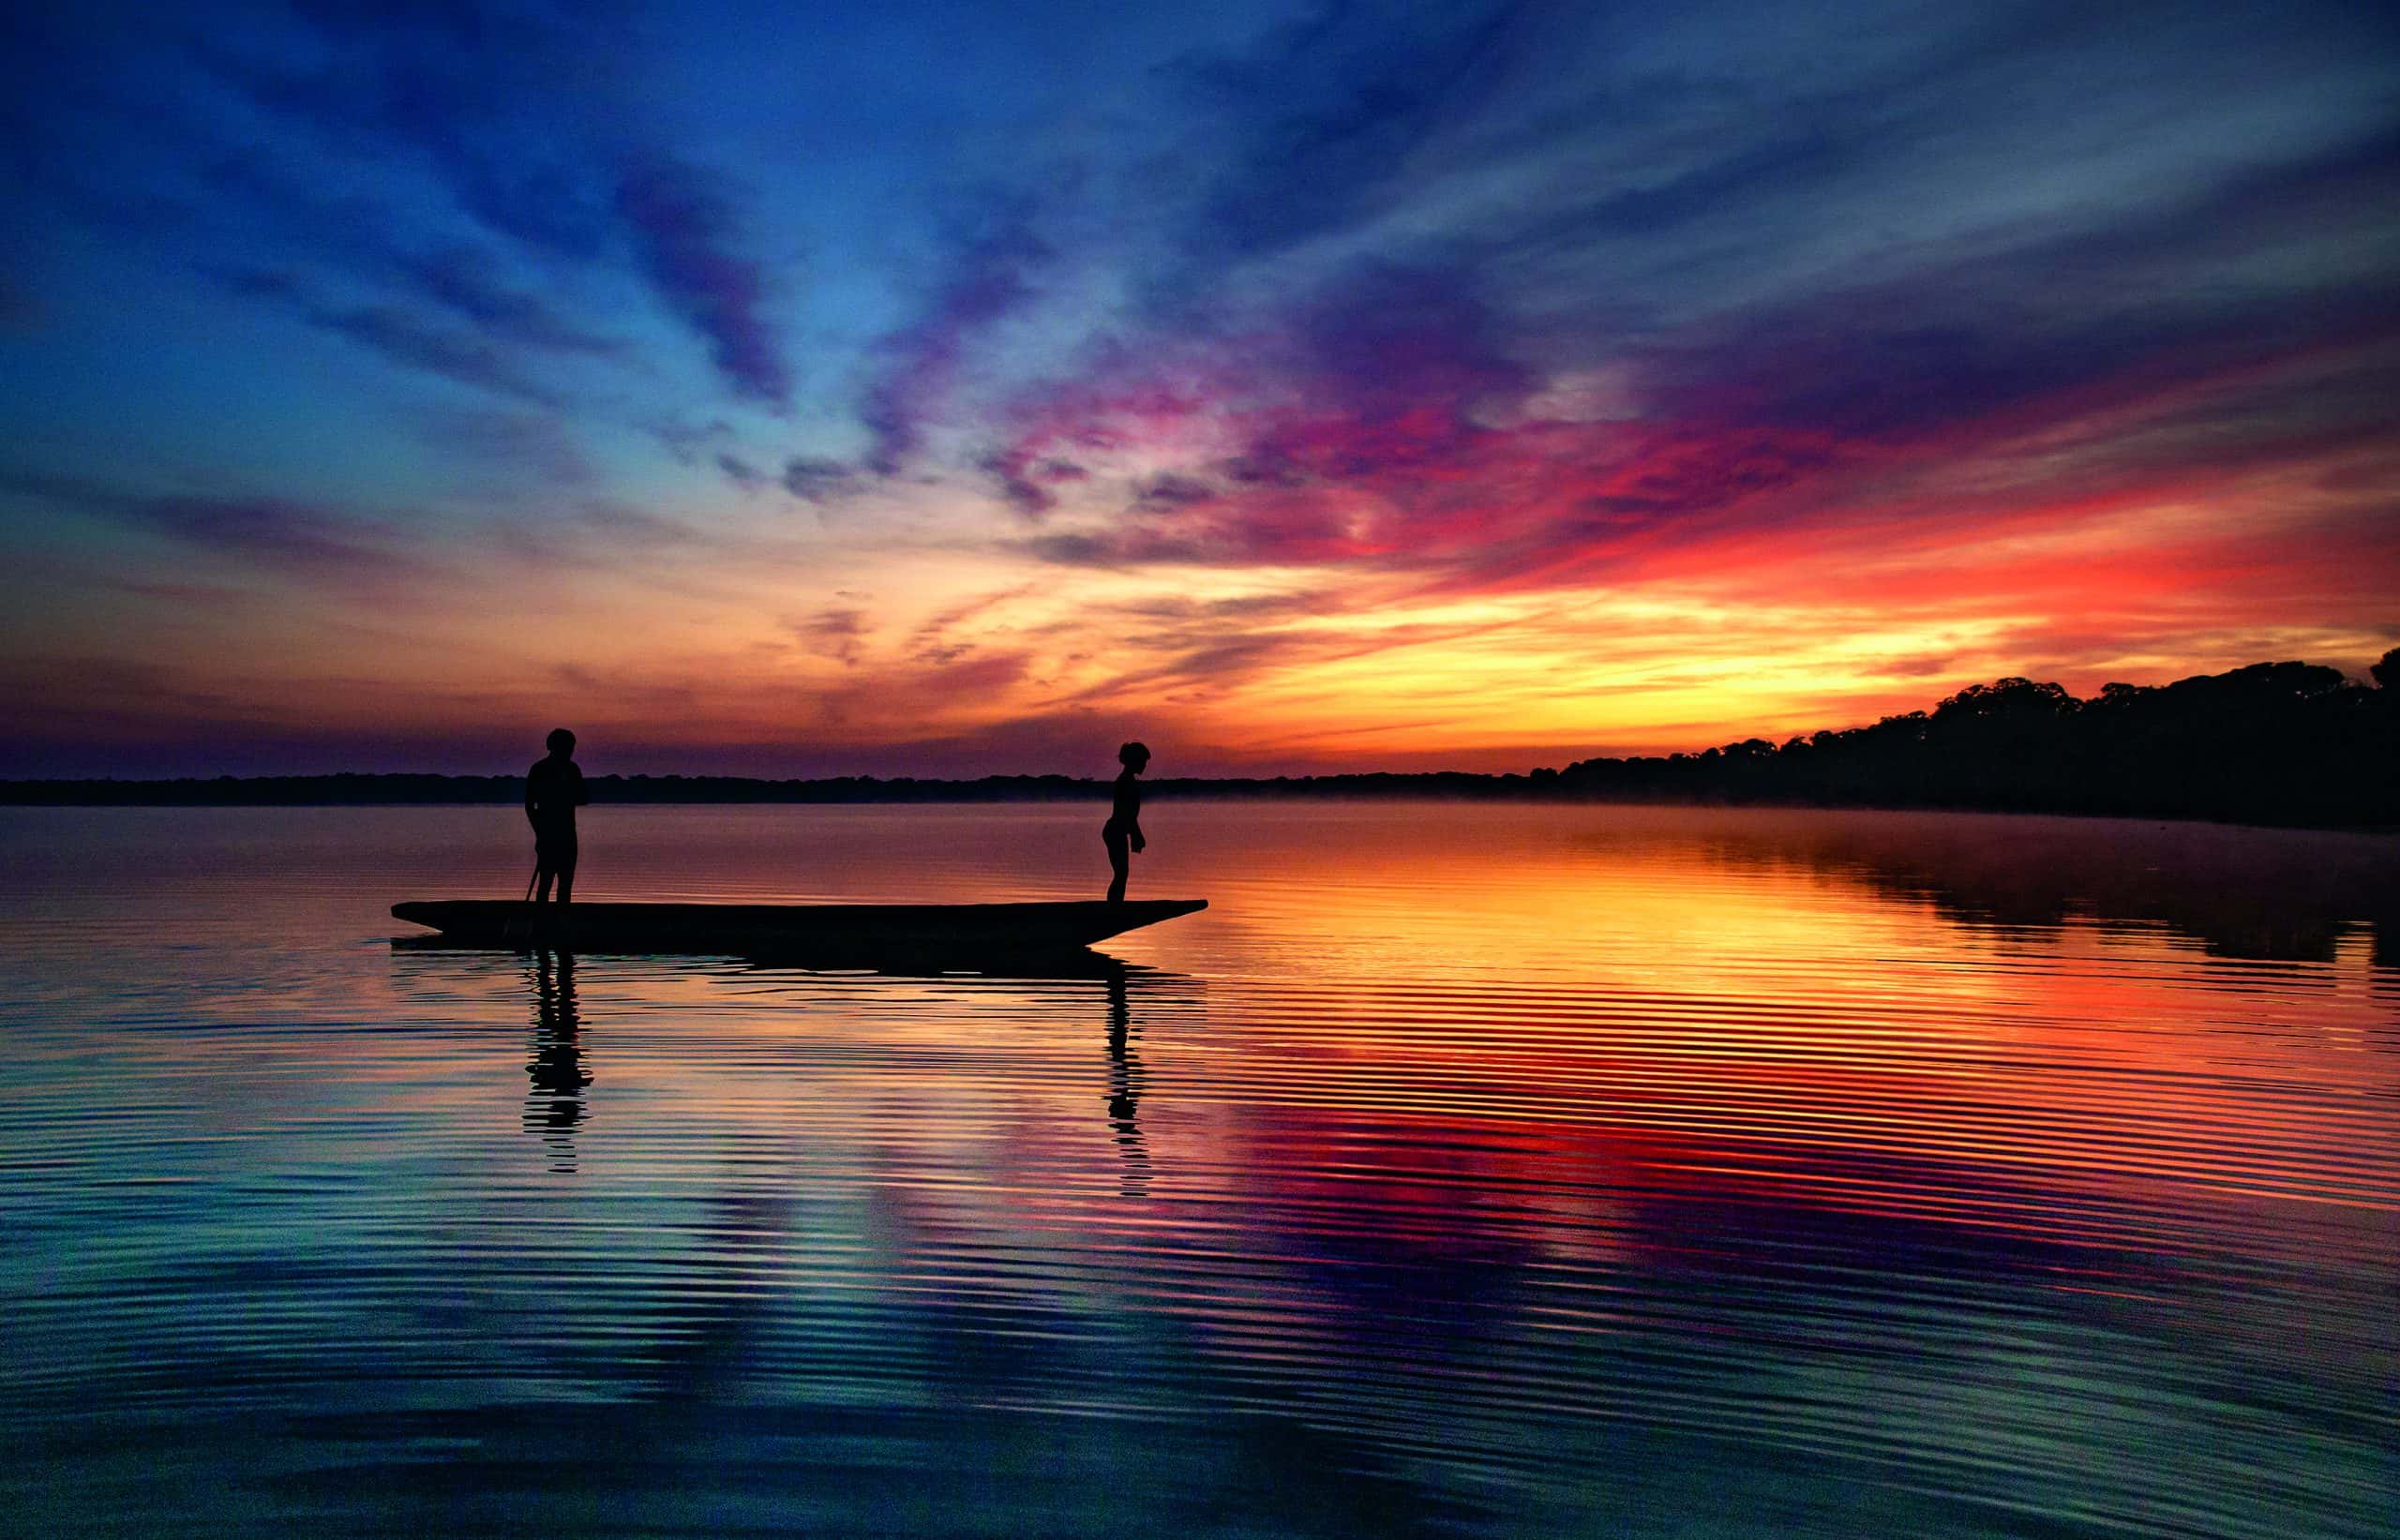 Foto de Araquém Alcantara de uma canoa no rio Amazonas onde se pode ver a silhueta de duas crianças em cima do barco e o pôr do sol ao fundo refletindo nas águas do rio.